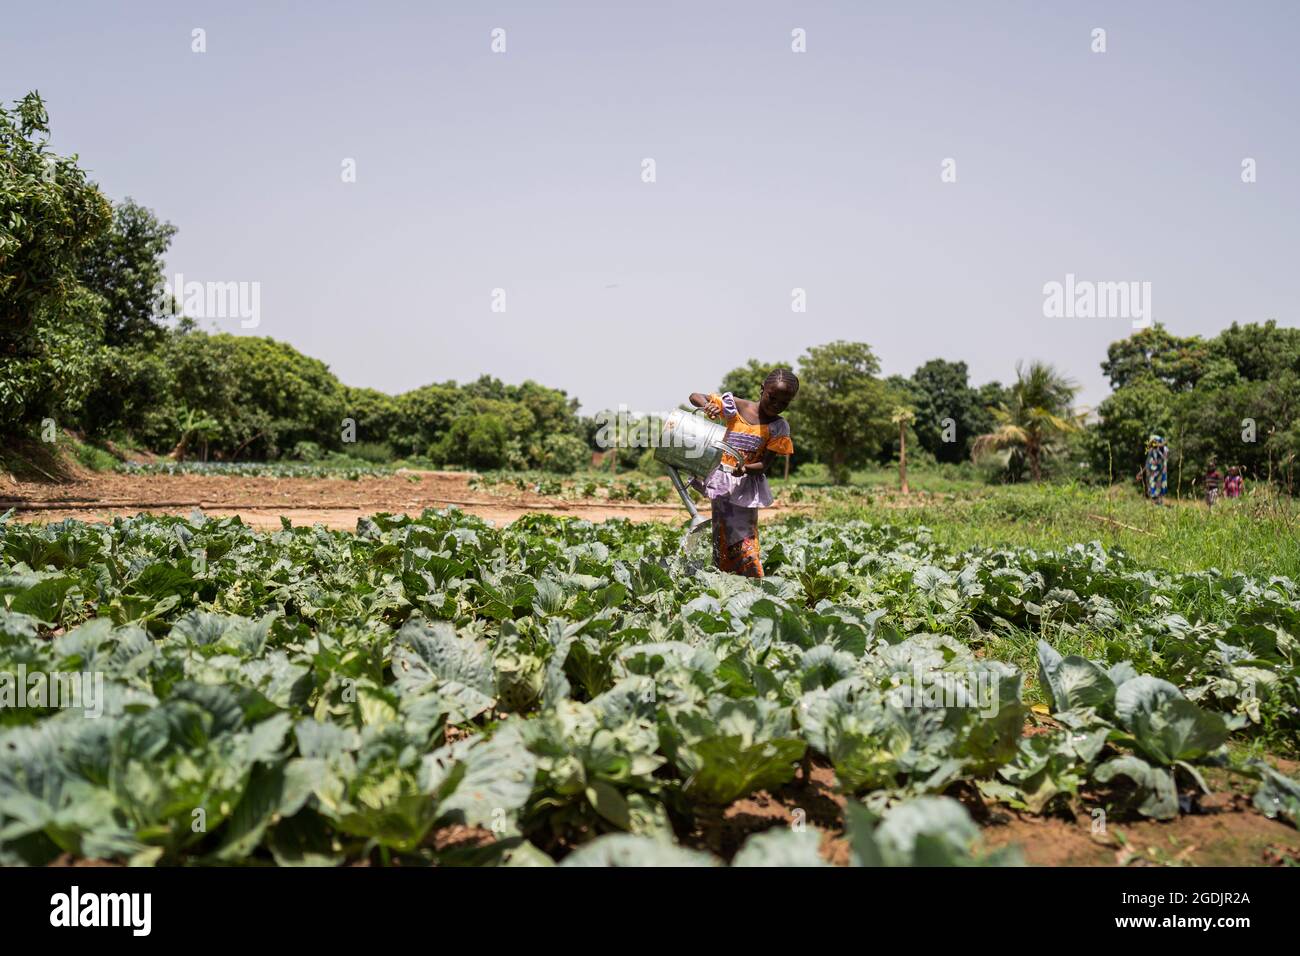 Grande campo di cavolo con una bambina che annaffiava le piante da una lattina di metallo pesante, da qualche parte in Africa Foto Stock